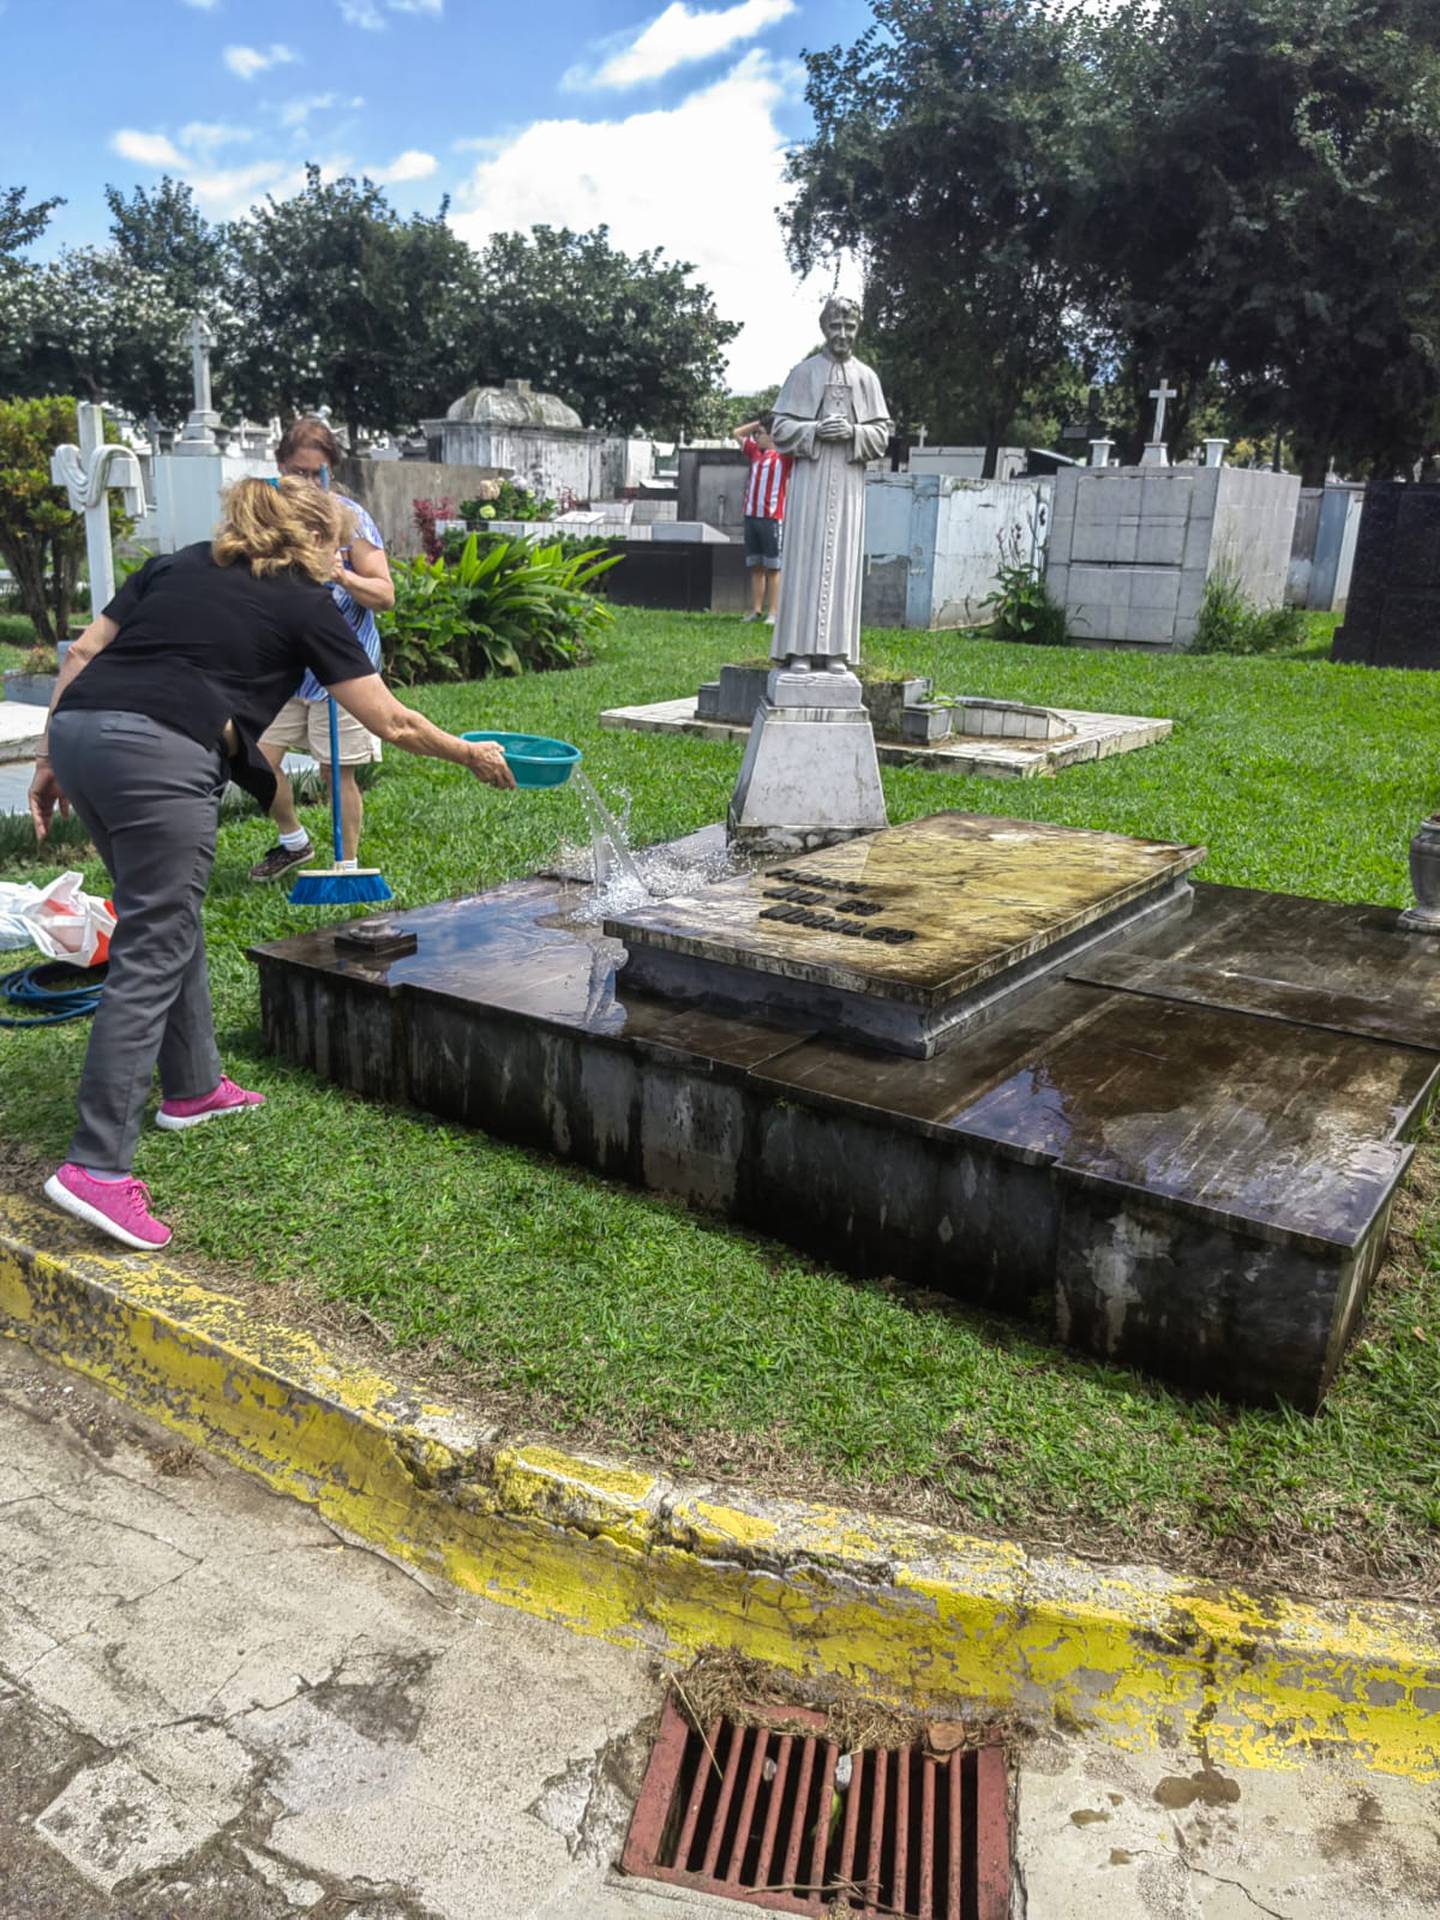 El 2 de noviembre del 2022 significó el regreso de la apertura total de los cementerios, después del cierre total y parcial en 2020 y 2021 por la pandemia. En la foto, la familia Alvarado limpia la tumba de quienes ya no están presentes, pero se siguen amando y recordando.